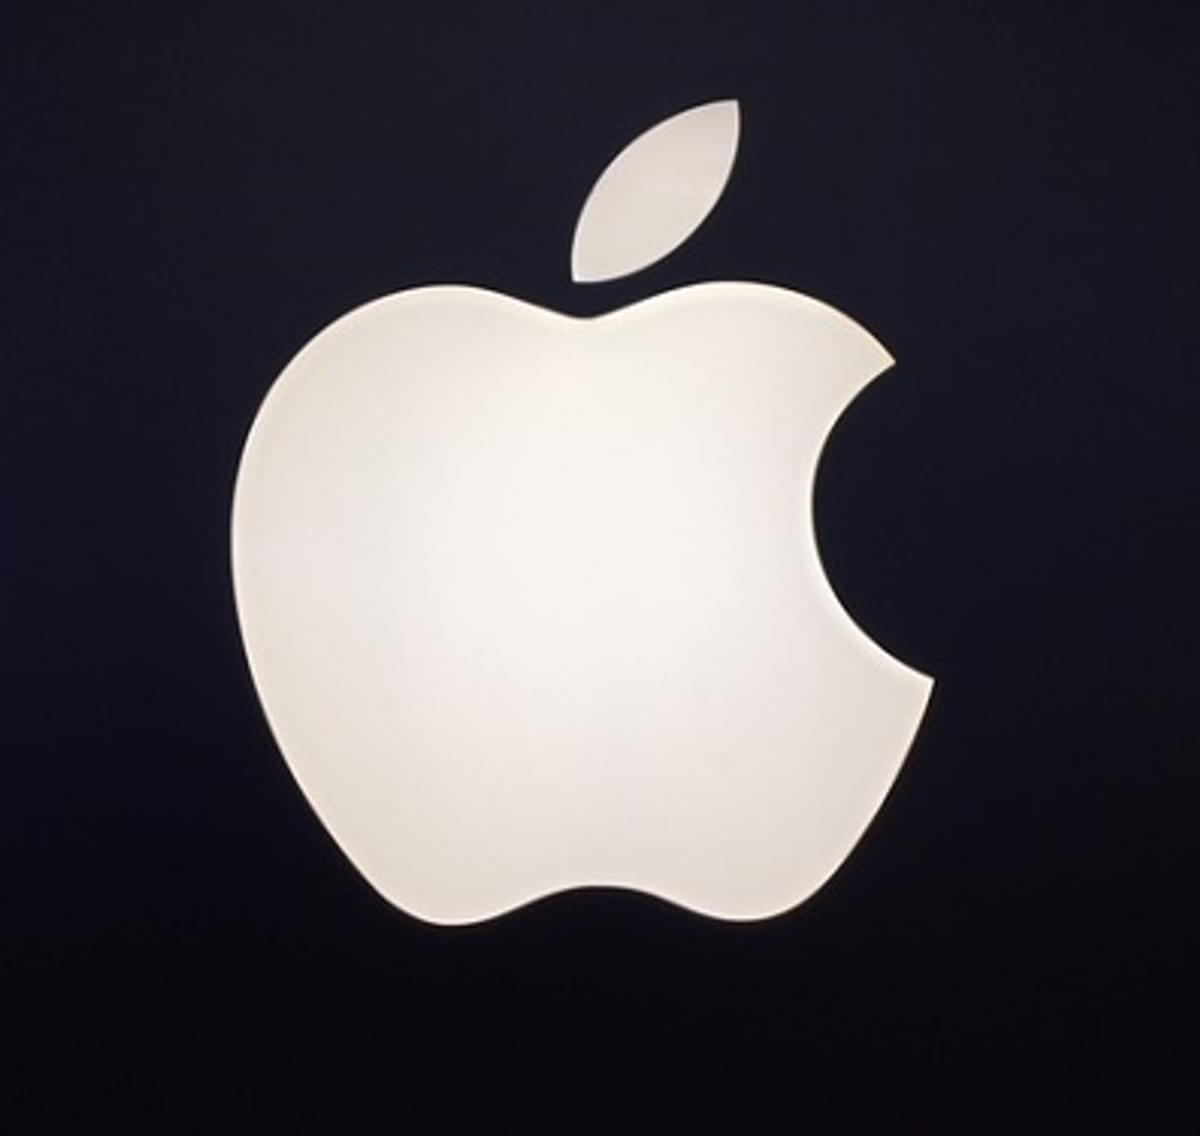 Apple boekt iets meer omzet en minder winst image